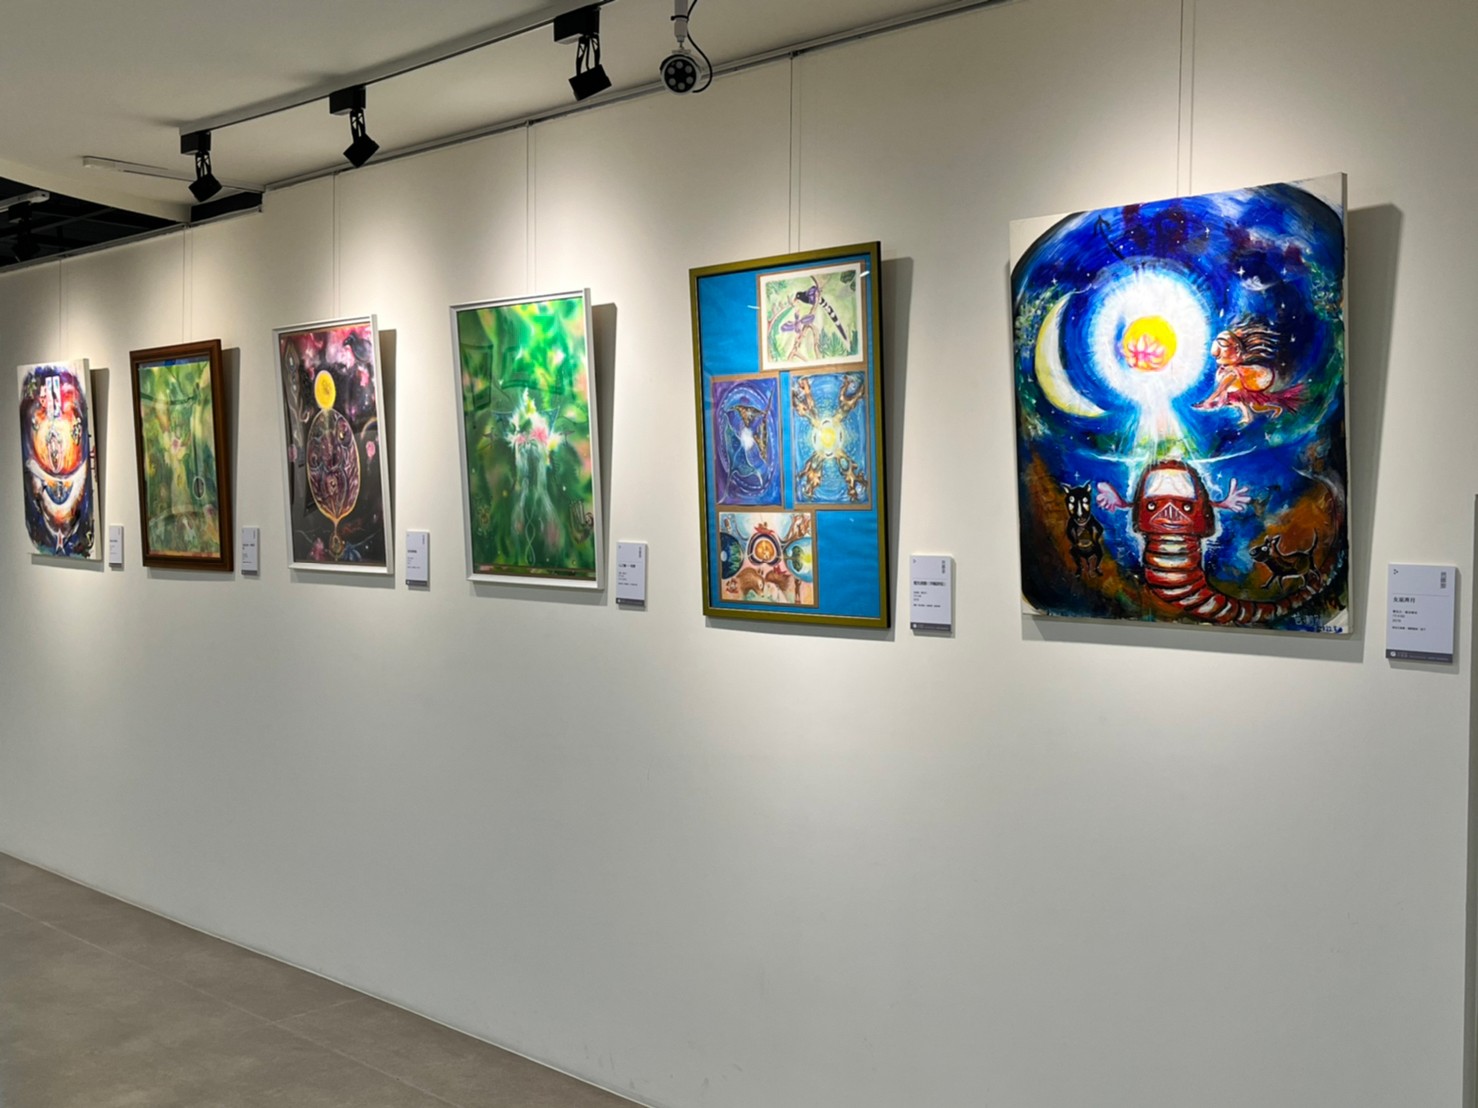 新北市美麗永安藝文中心自即日起至11月21日展出「星星的土壤─美麗永安×和光天使藝廊7人聯展」